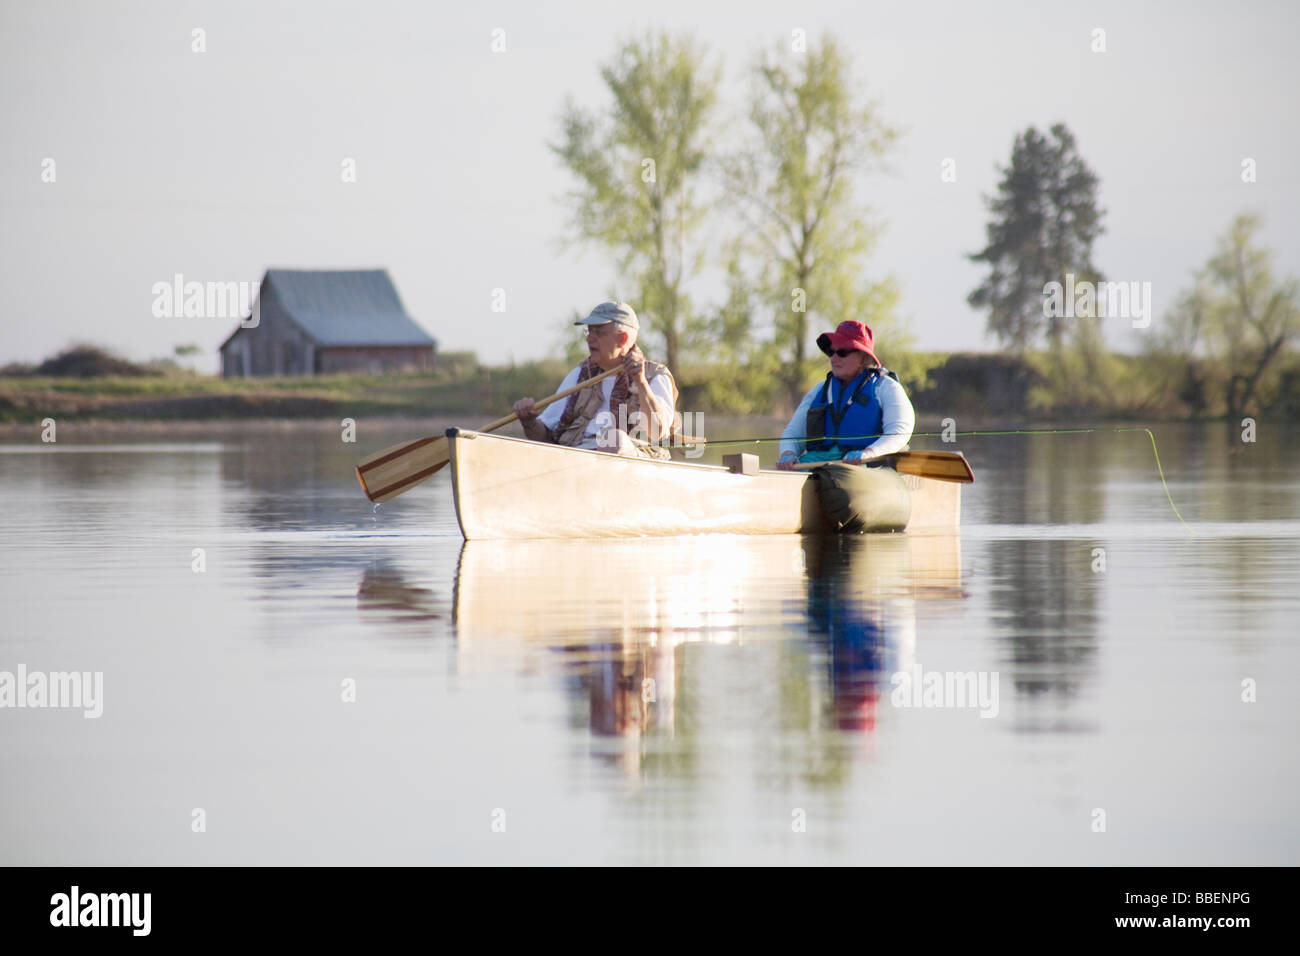 Elderly couple fly fishing in canoe, Amber Lake, Washington Stock Photo -  Alamy